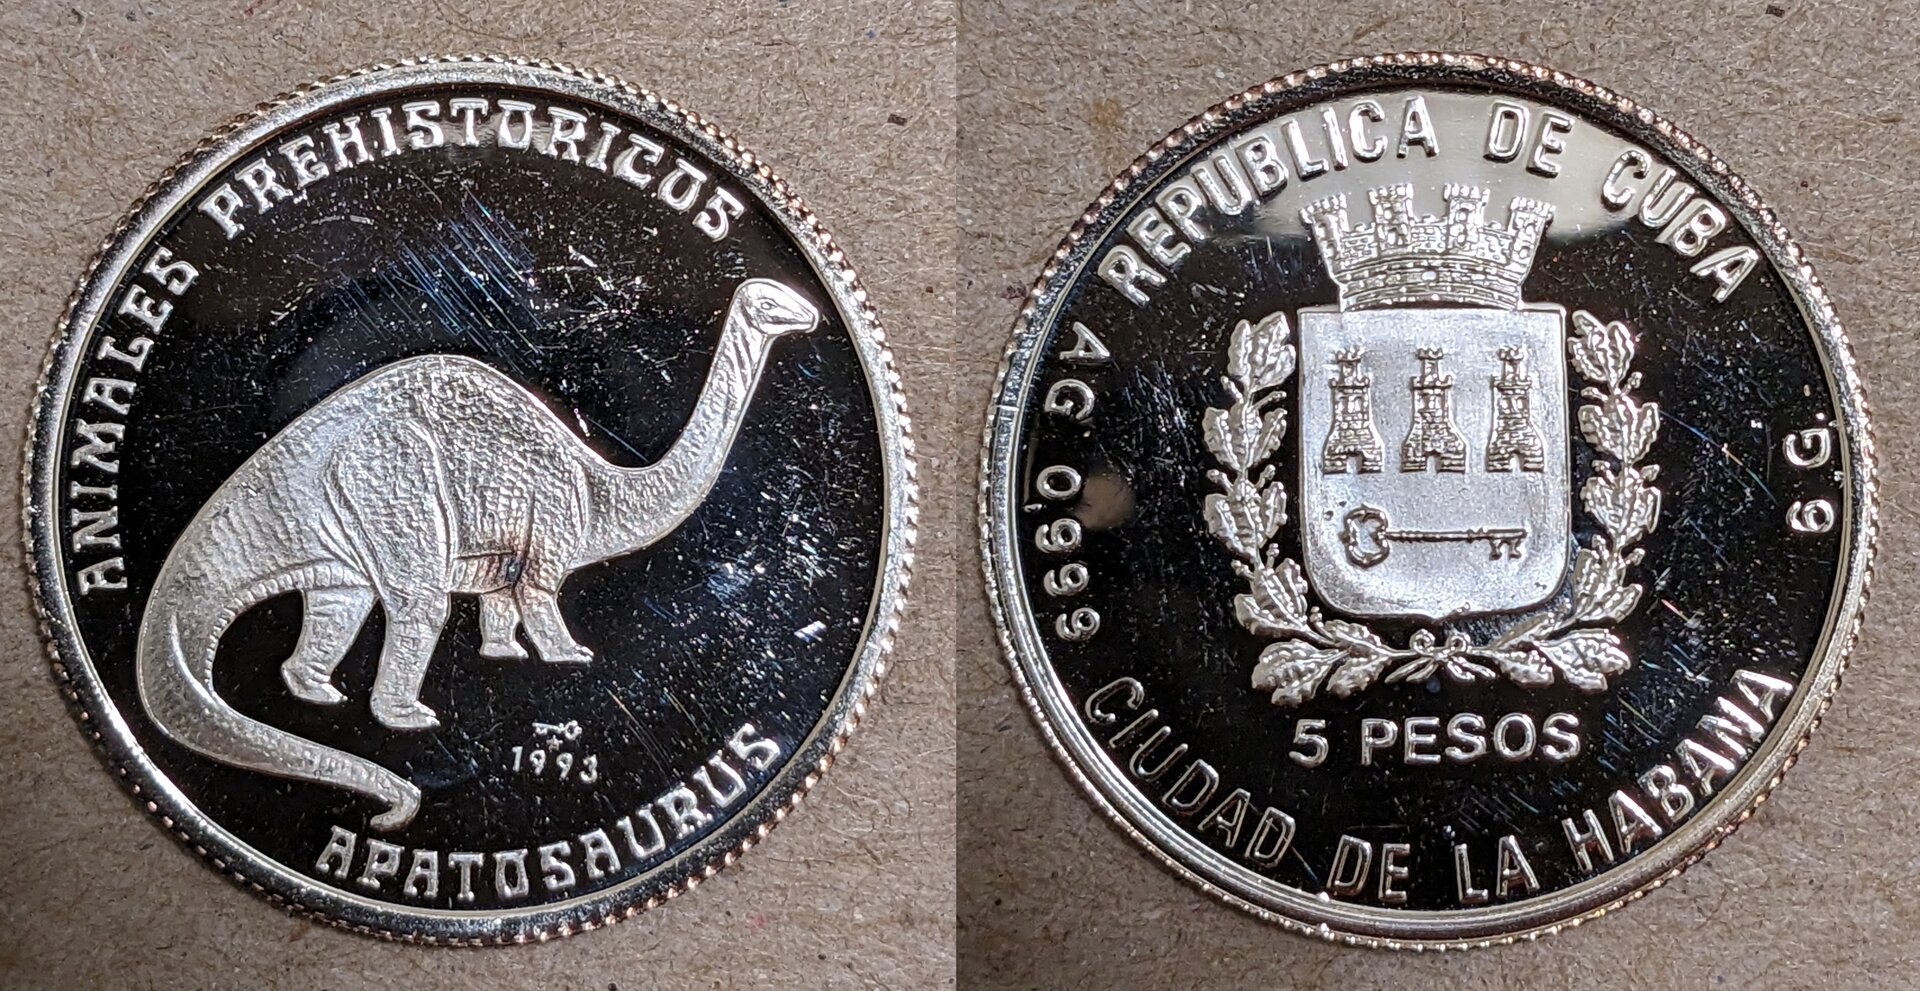 1993 cuba 5 pesos apatosaurus.jpg